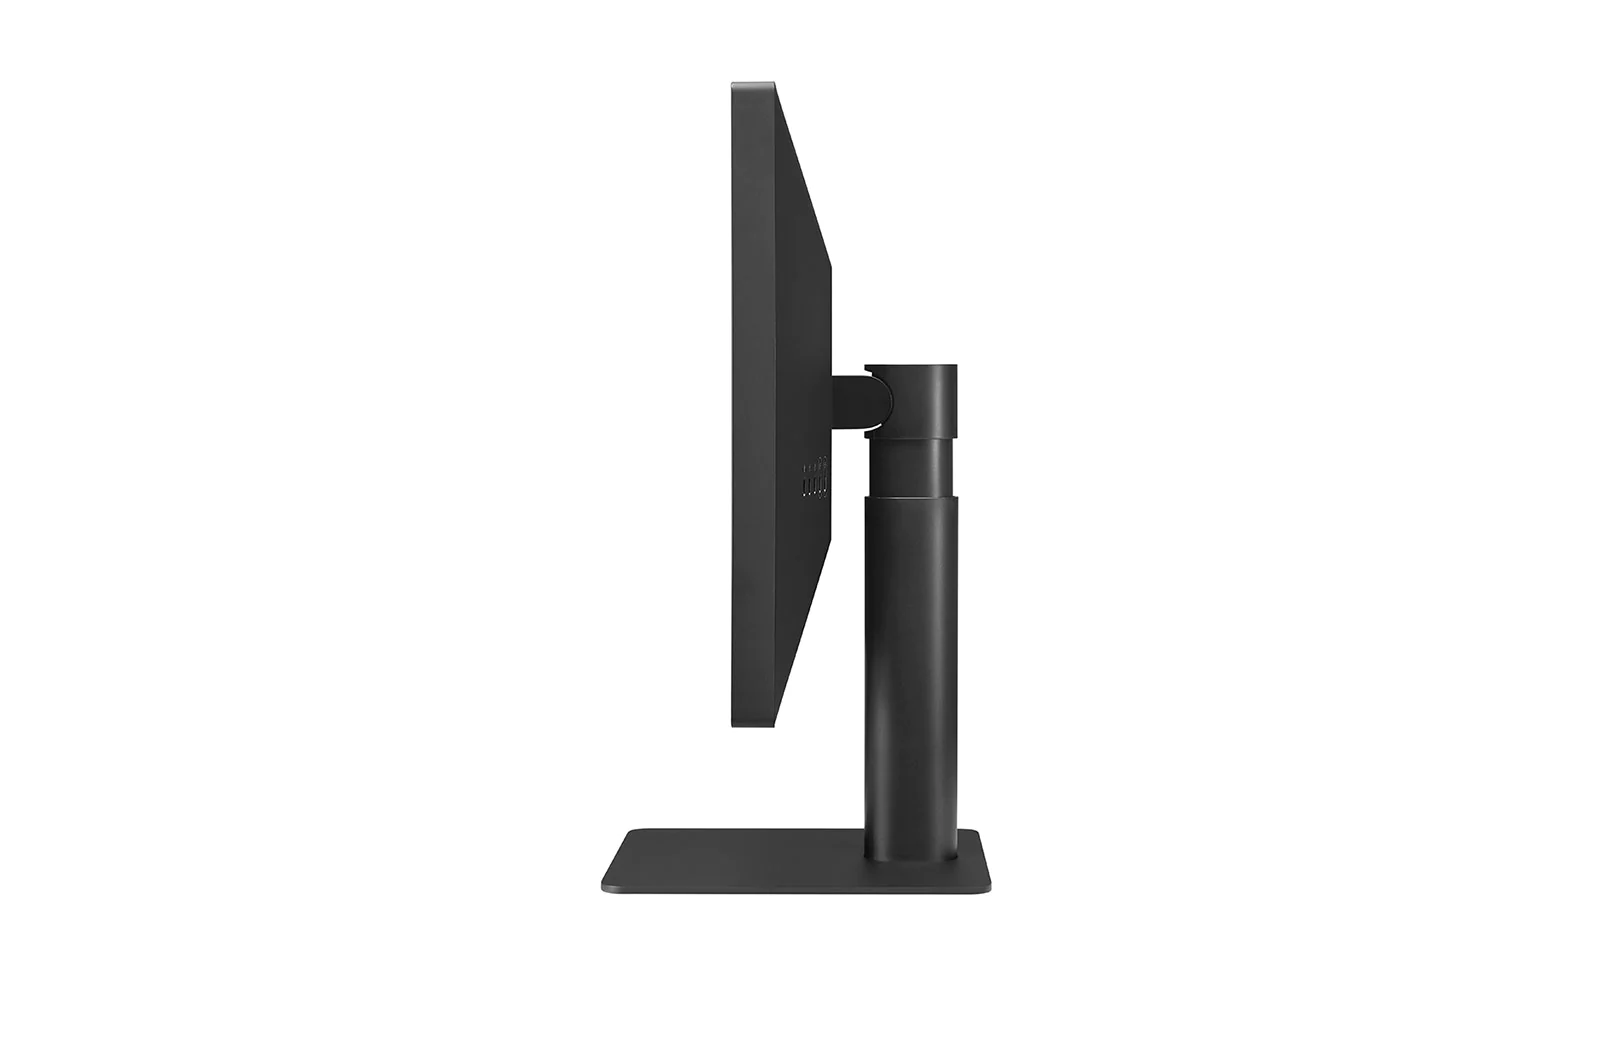 LG - Monitor LG UltraFine 23.7" 24MD4KL-B IPS 4K 60Hz Thunderbolt 3 (Apple Ready)